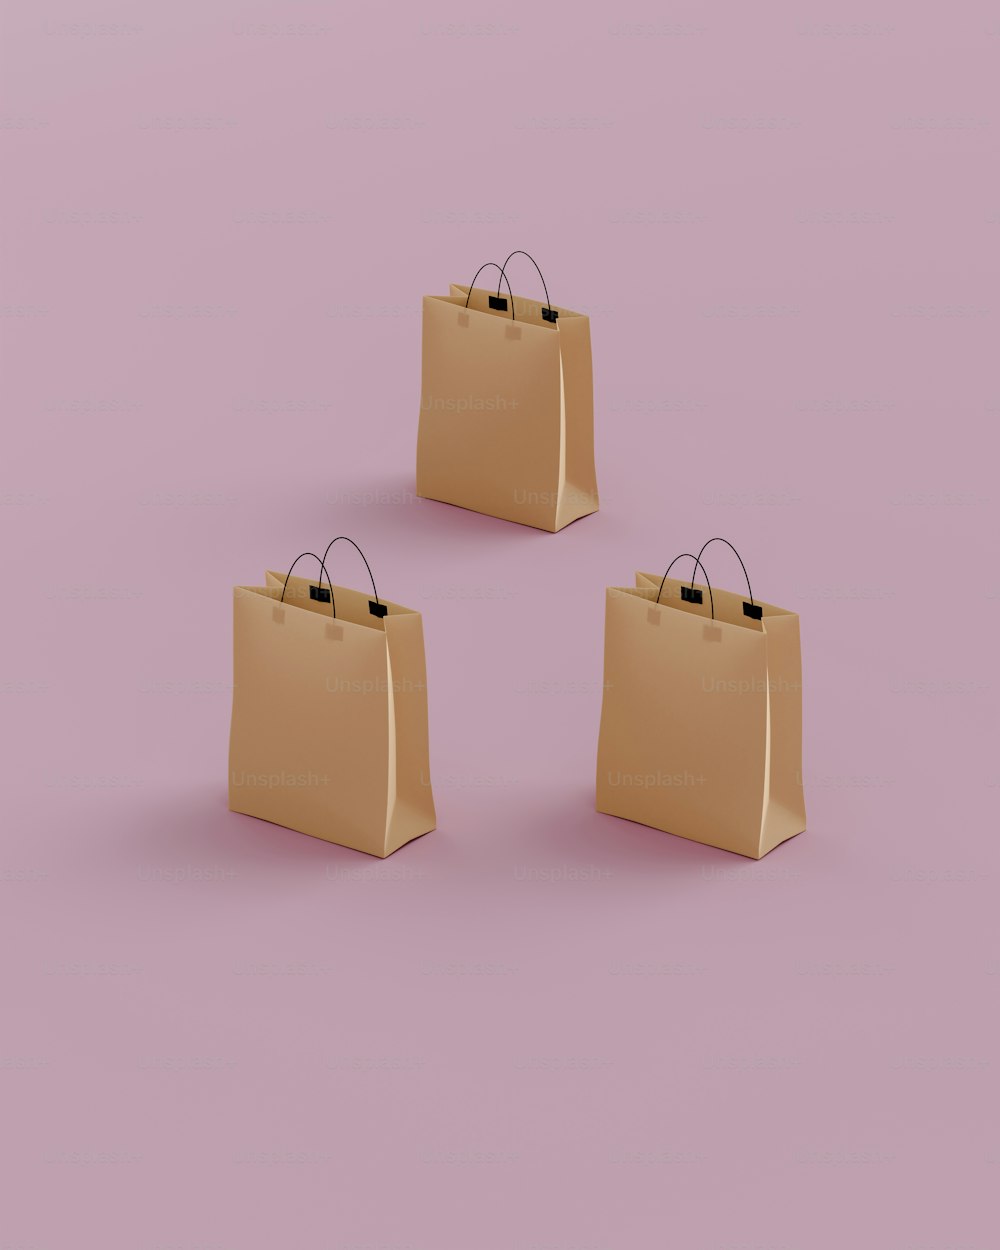 ピンクの背景に3つの茶色の買い物袋